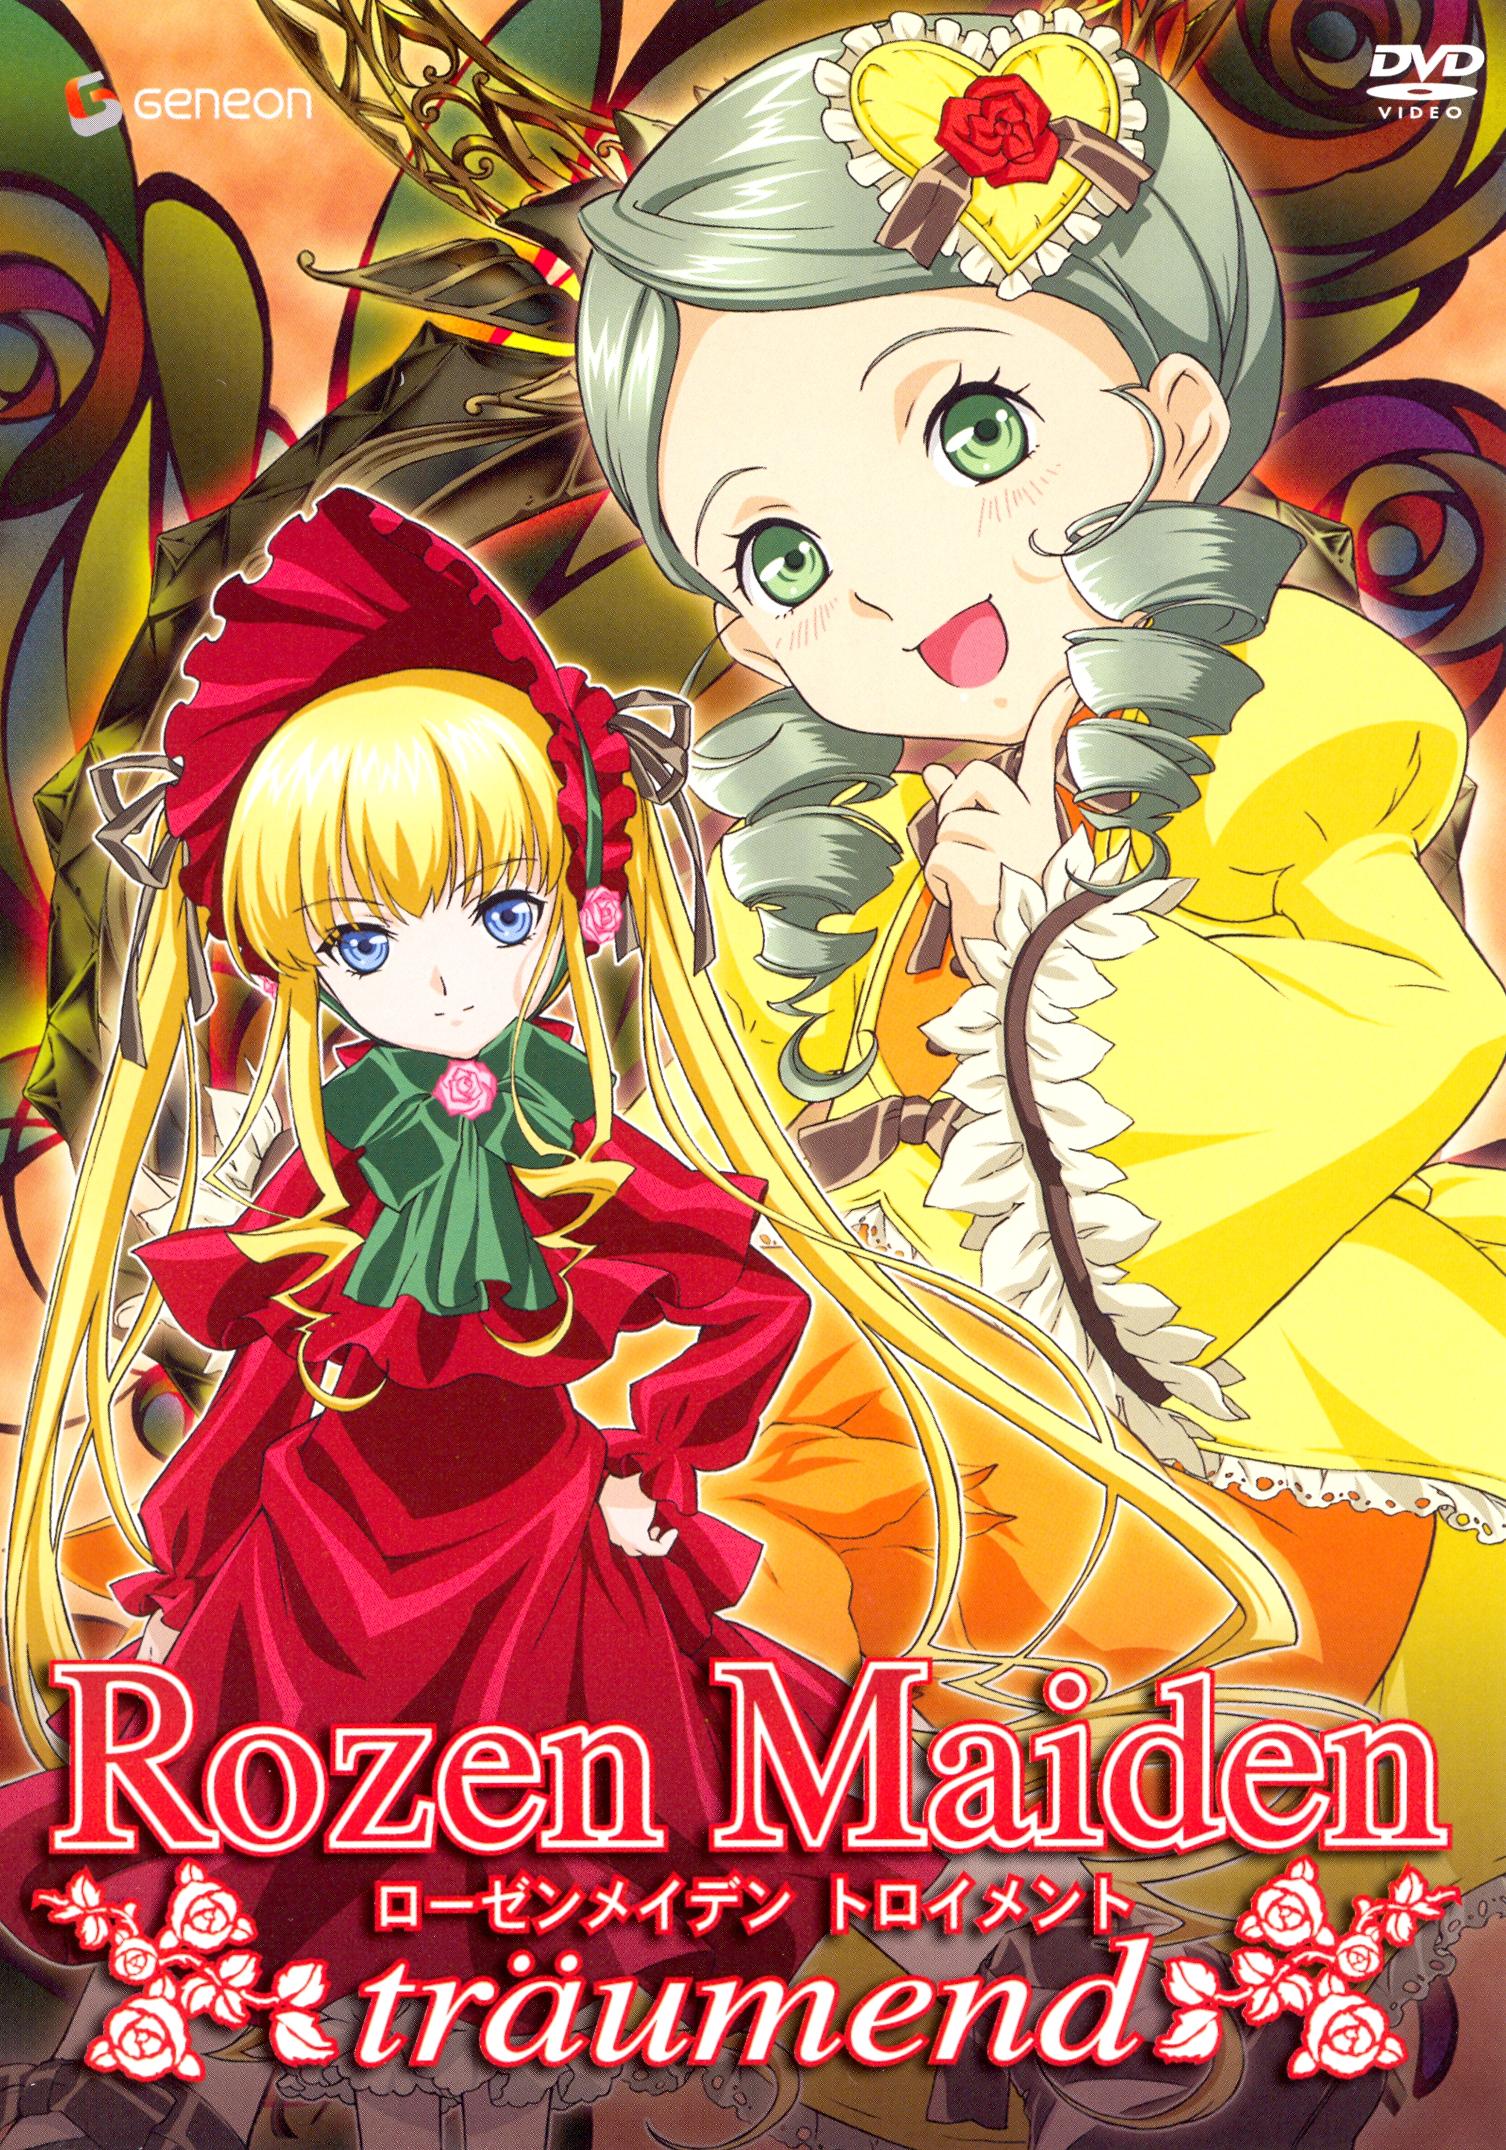 Best Buy: Rozen Maiden: Traumend, Vol. 1 Puppet Show [DVD]